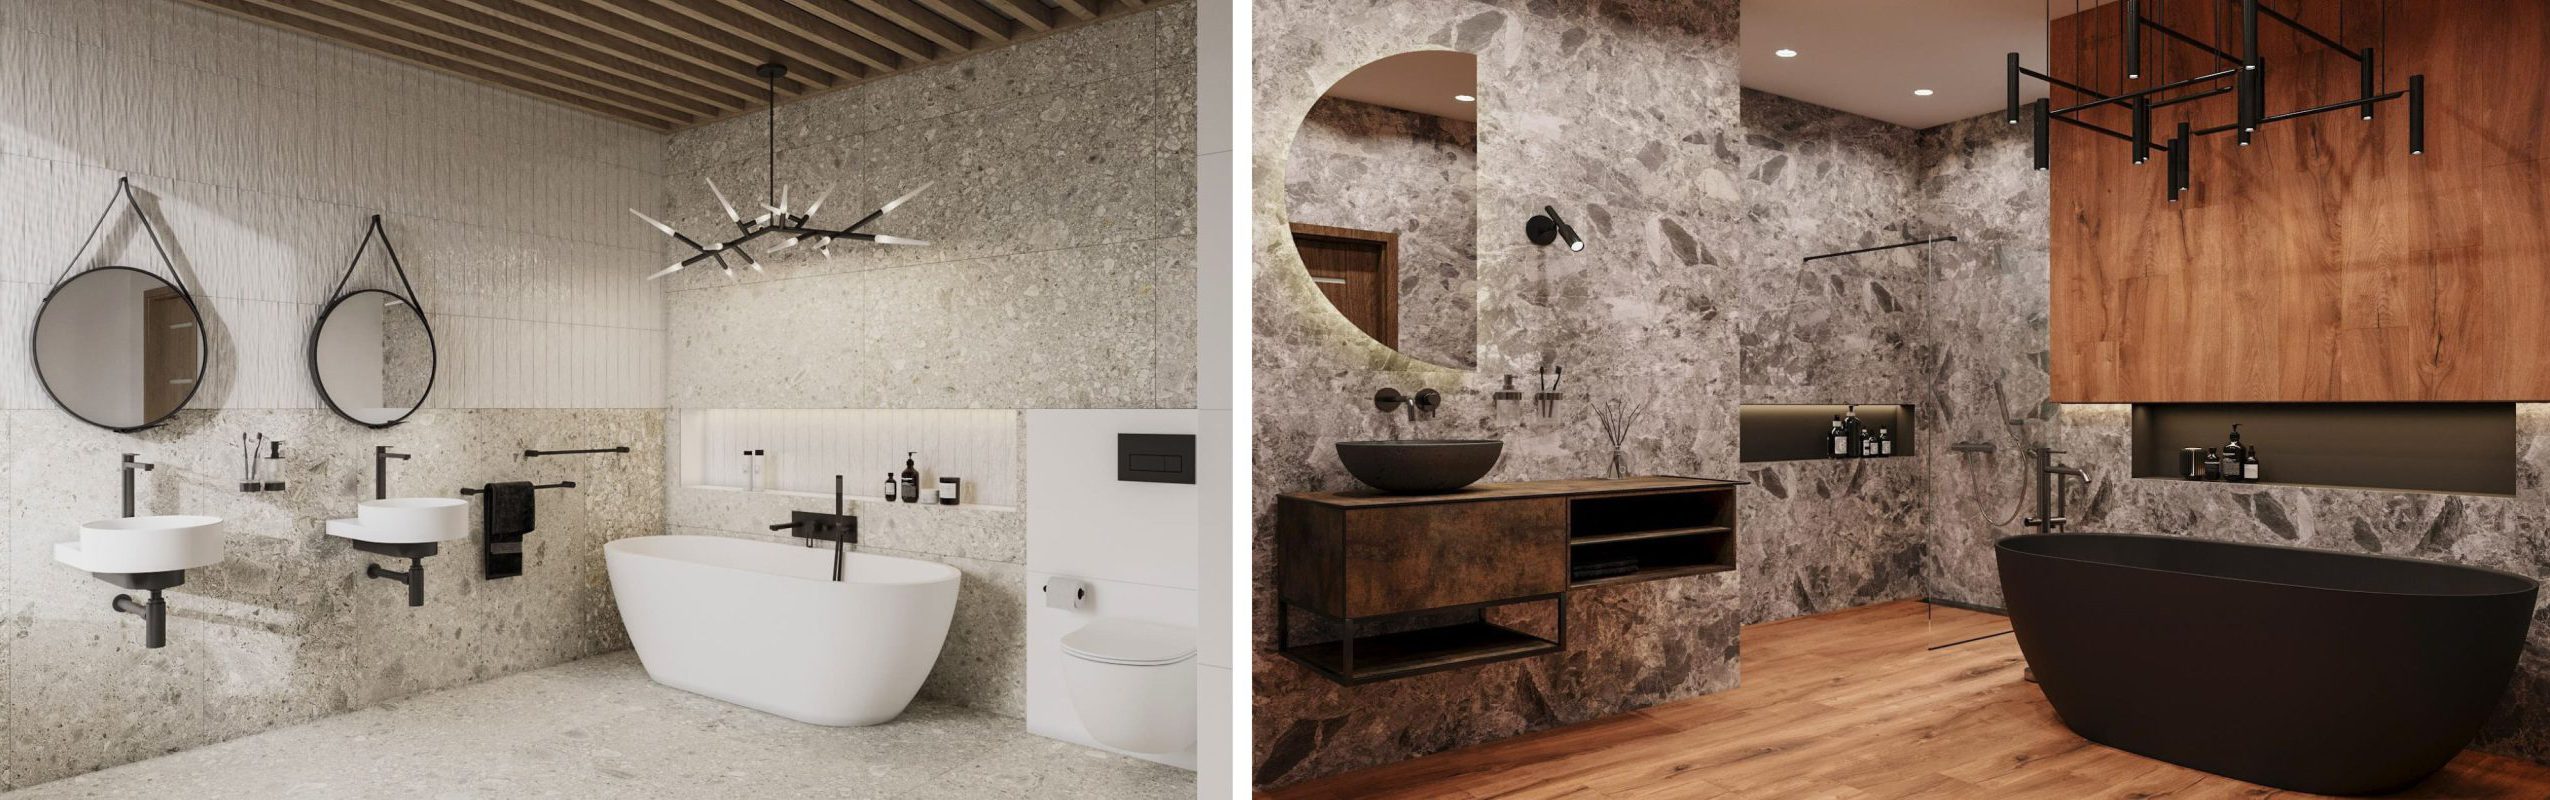 SIKO Volně stojící vana ve velké koupelně, černá matná vana, dřevo v koupelně, kamenná koupelna